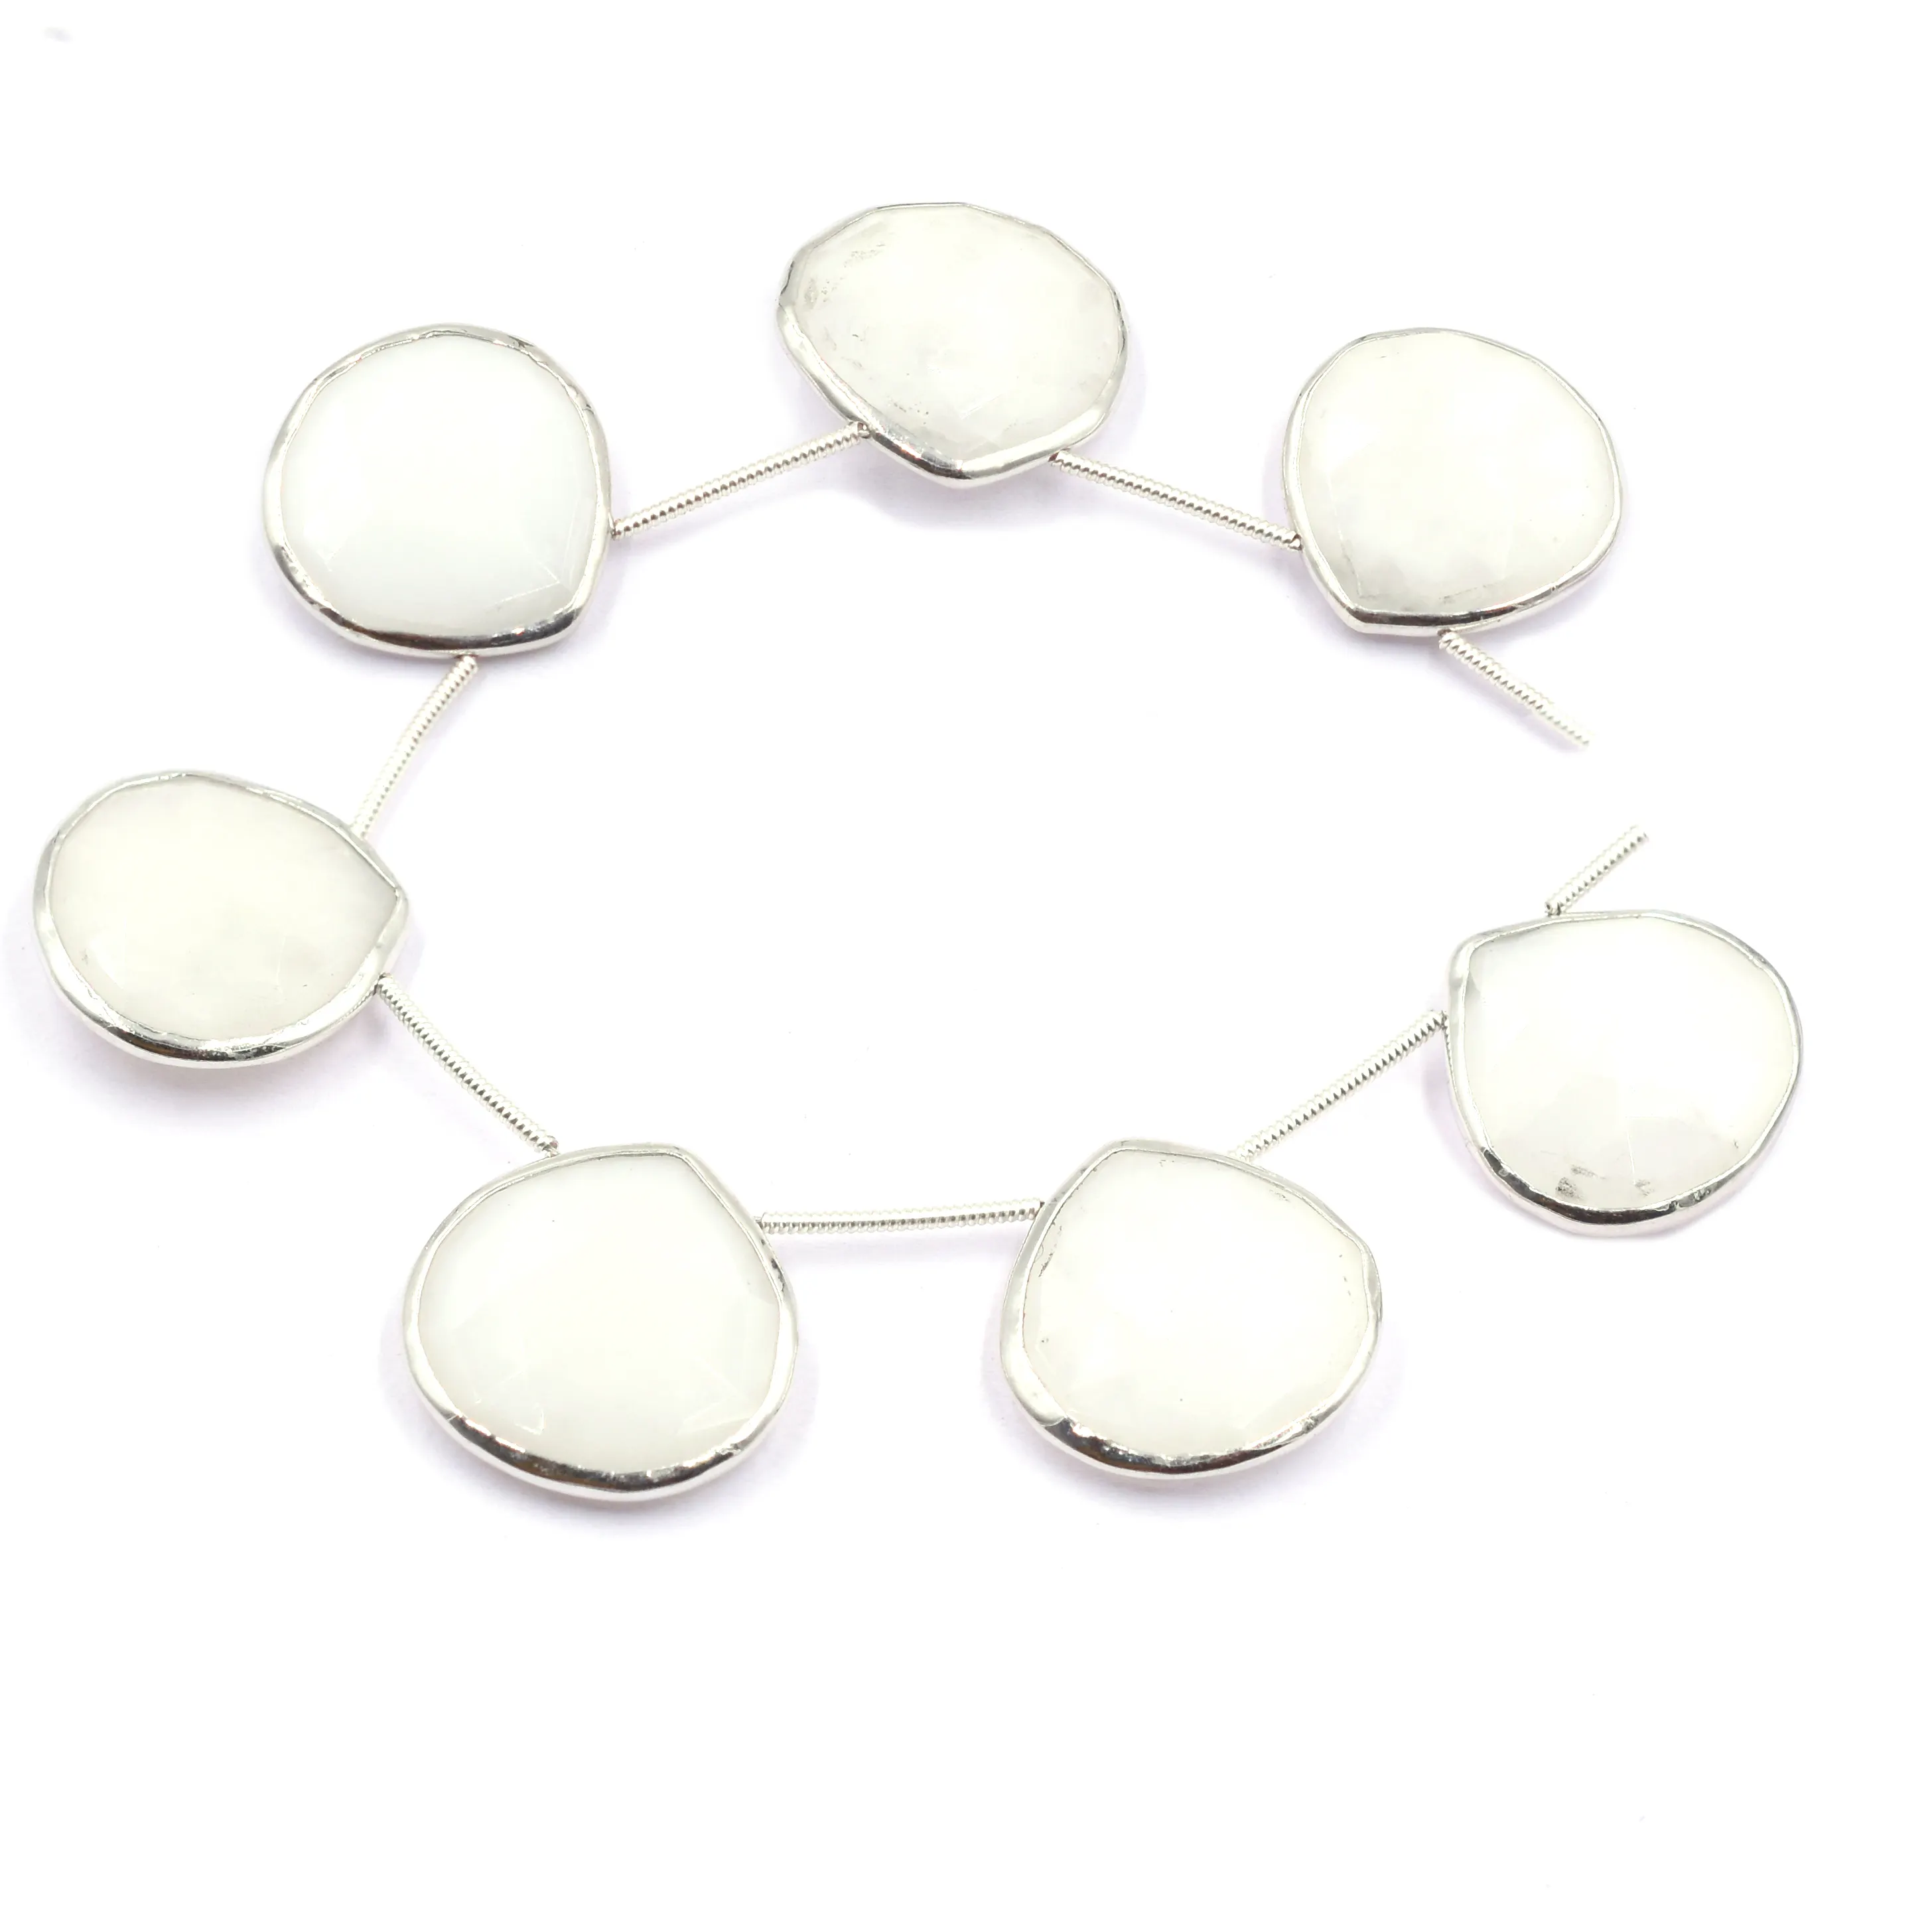 Agate blanche 19 à 21 MM en forme de coeur lunette en argent plaqué argent côté supérieur percé 7 perles brin